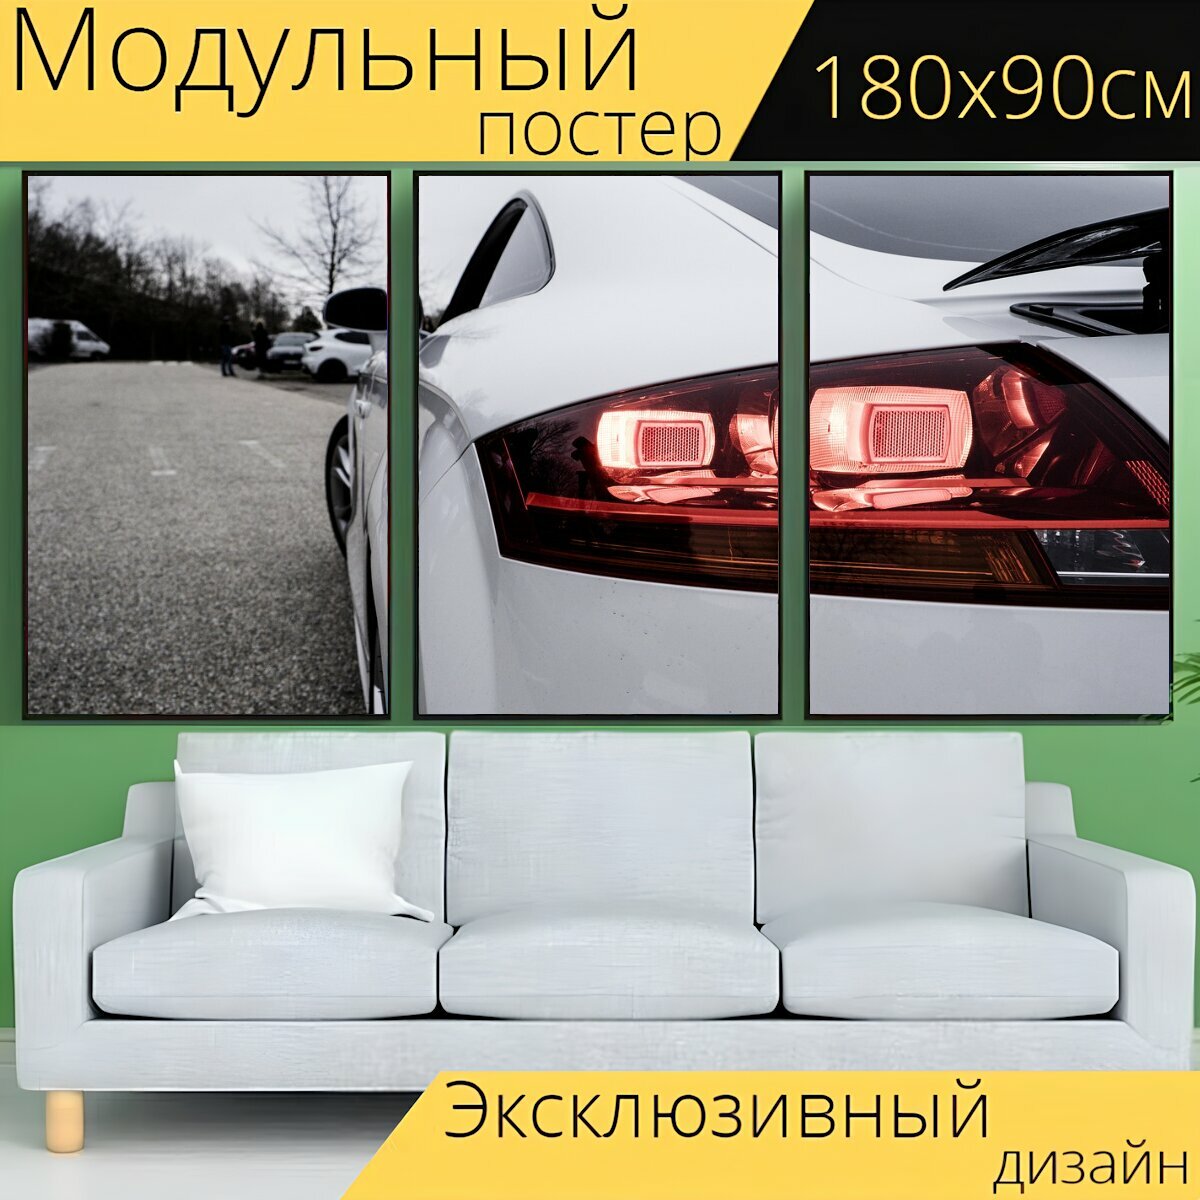 Модульный постер "Машина, транспортное средство, напольная лампа" 180 x 90 см. для интерьера